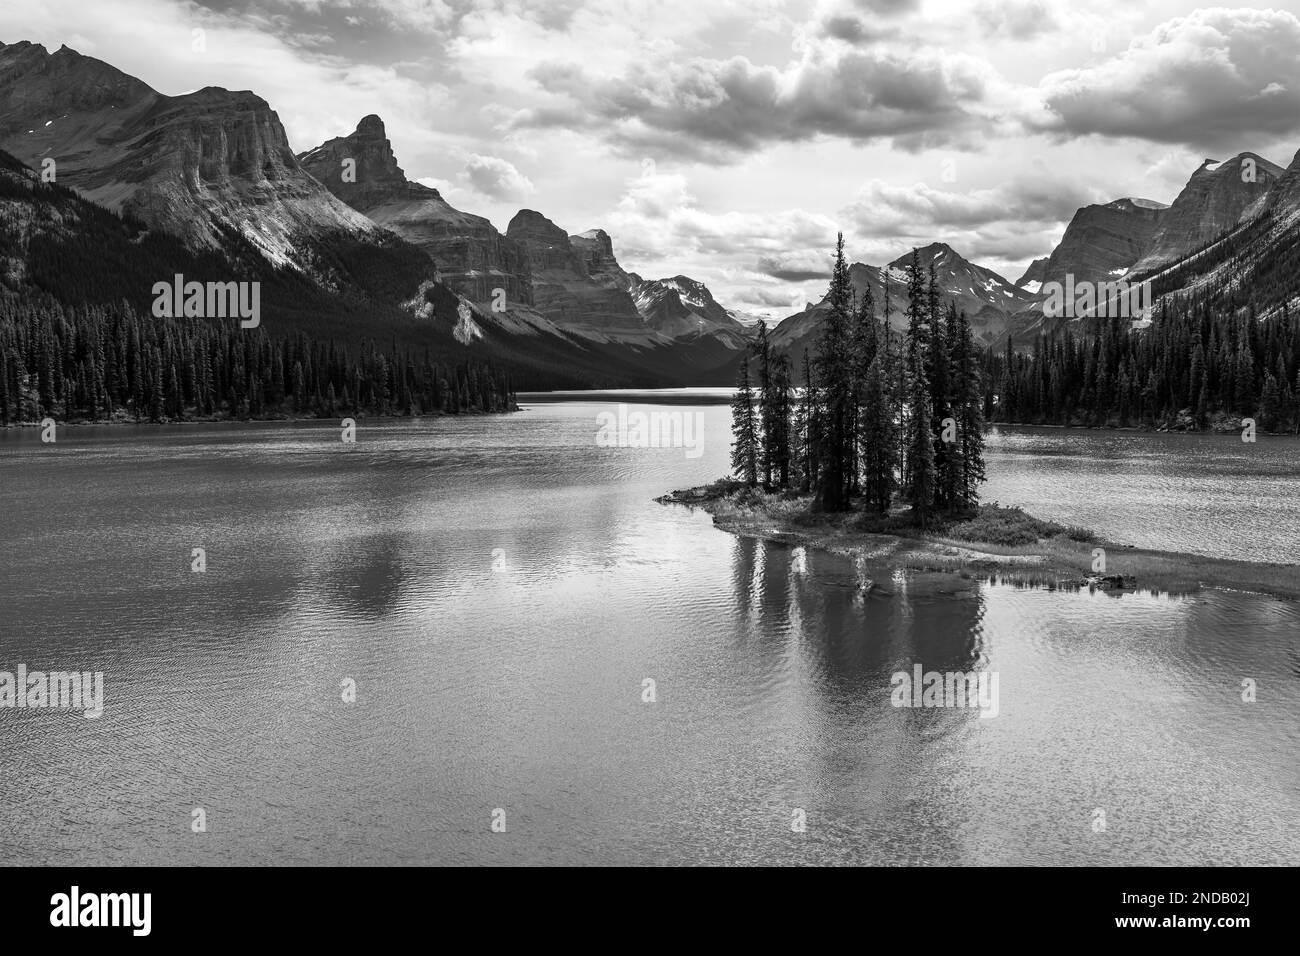 Spirit Island et Maligne Lake avec les rocheuses canadiennes en noir et blanc, parc national Jasper, Alberta, Canada. Banque D'Images